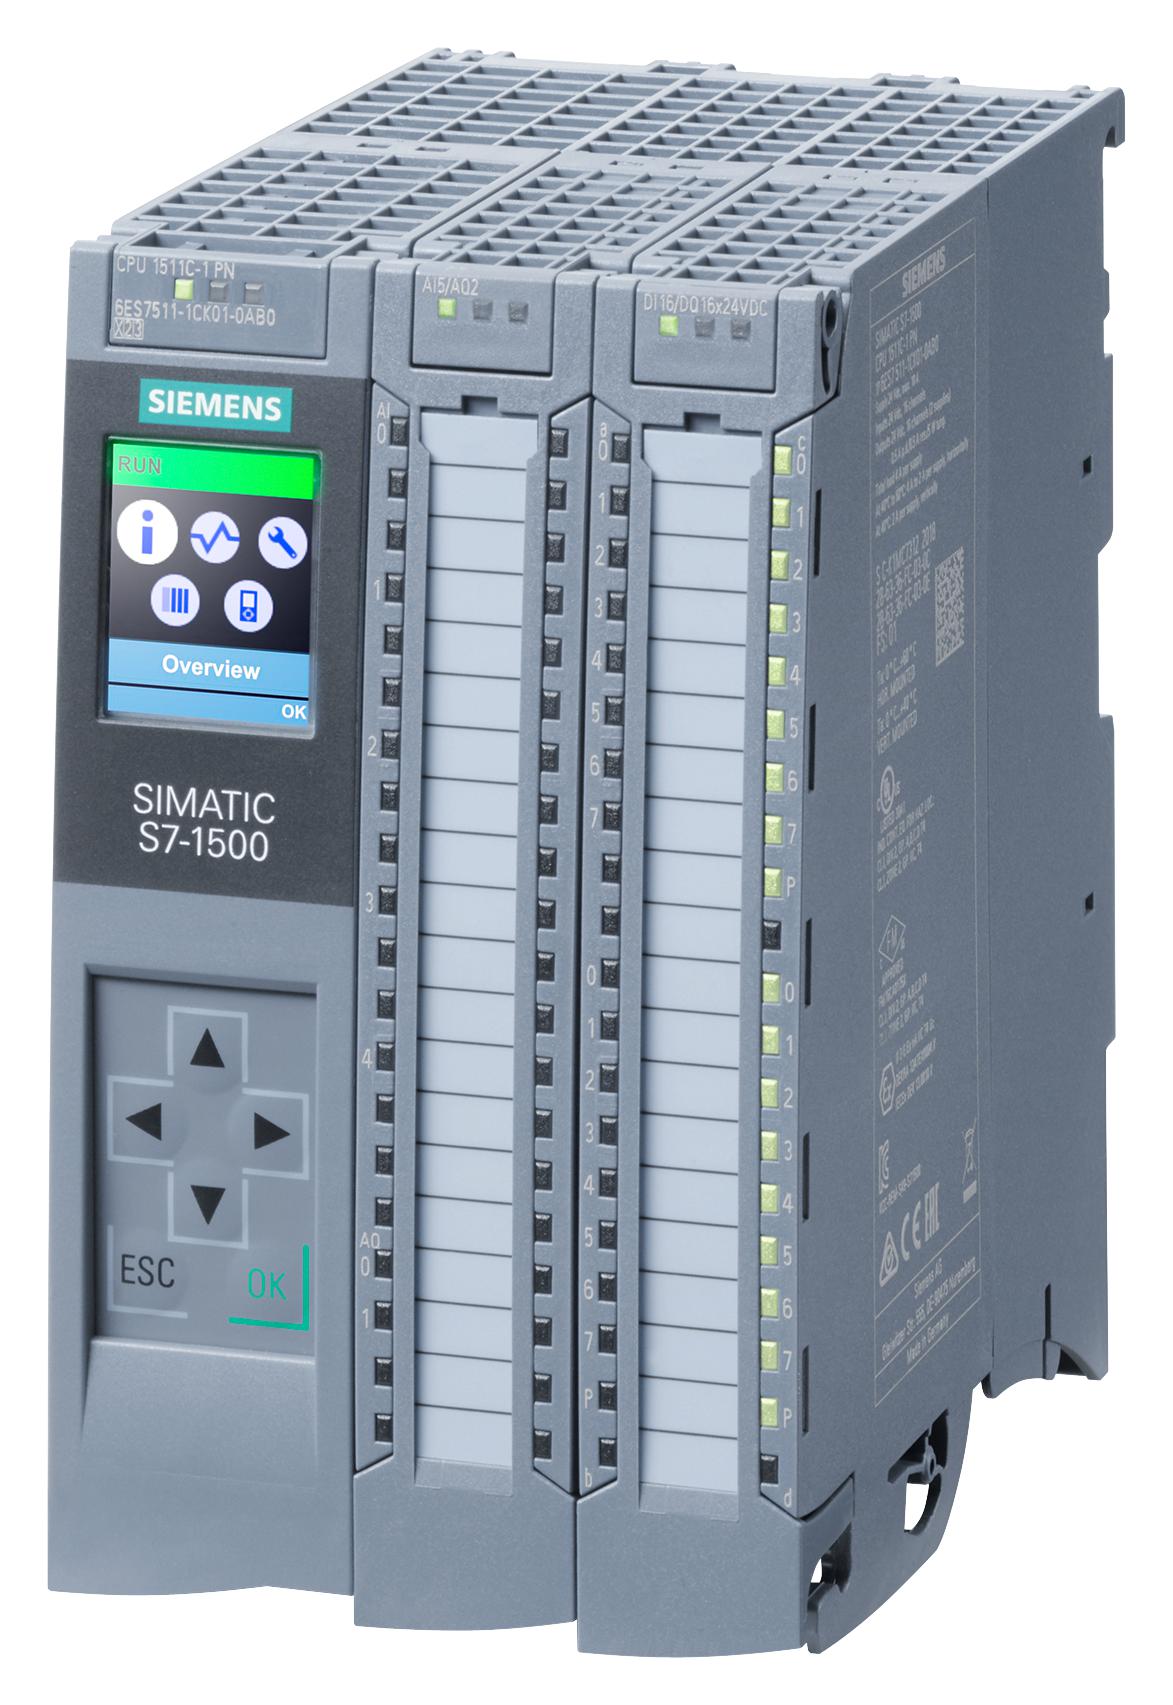 Siemens 6Es7511-1Ck01-0Ab0. Processor/24Vdc/175Kb/5Ai/2Ao, 16Di/16Do